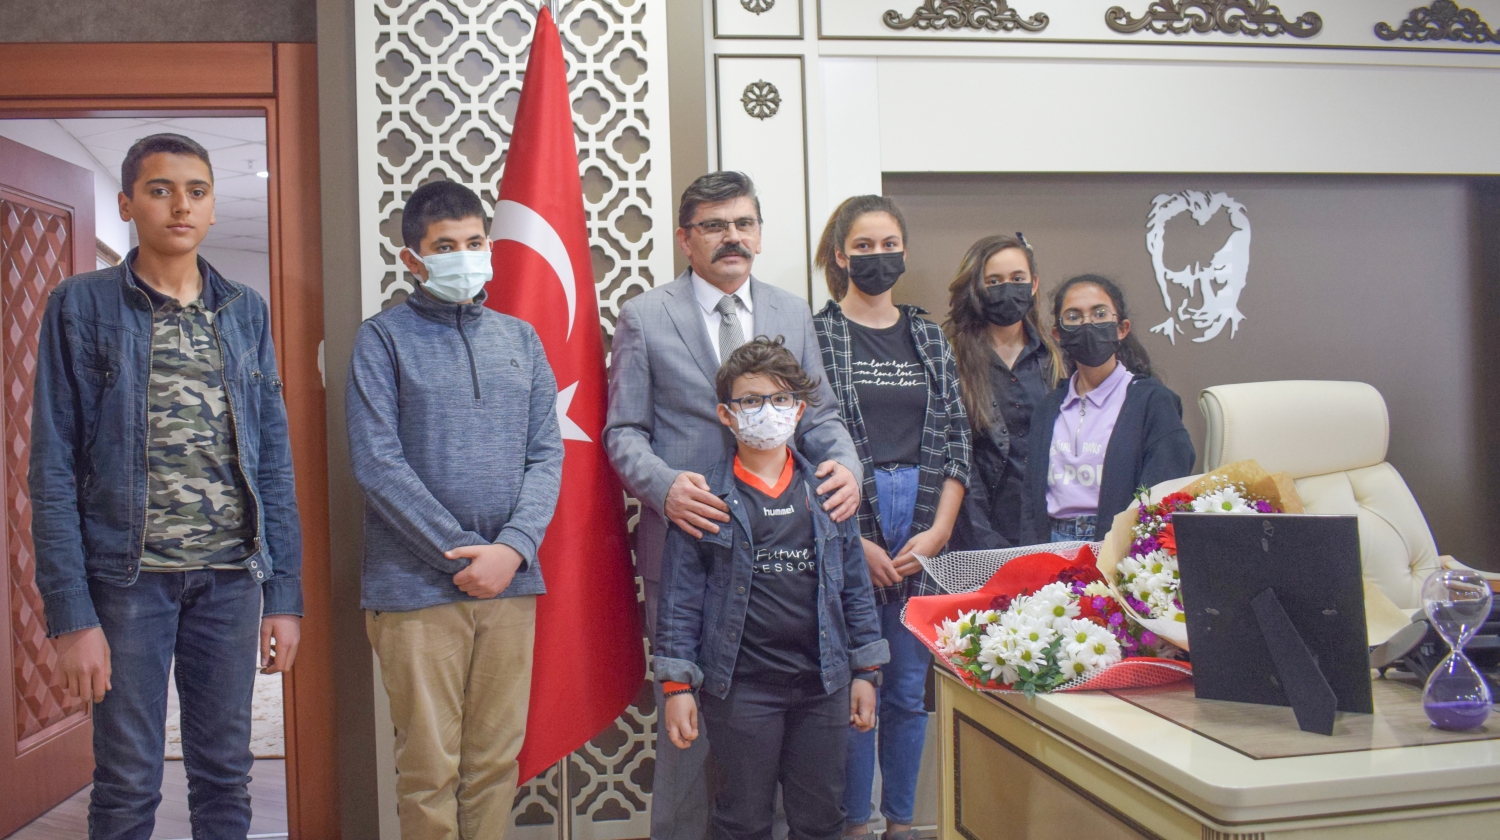 Malatya Kent Konseyi Çocuk Meclisi, Yürütme Kurulu üyeleri ve aileleri Türk Polis teşkilatının 177. Kuruluşunu kutlamak için Malatya Emniyet Müdürü Ercan Dağdeviren’i ziyaret edip, hafta dolayısıyla kendilerine çiçek takdim ettiler.